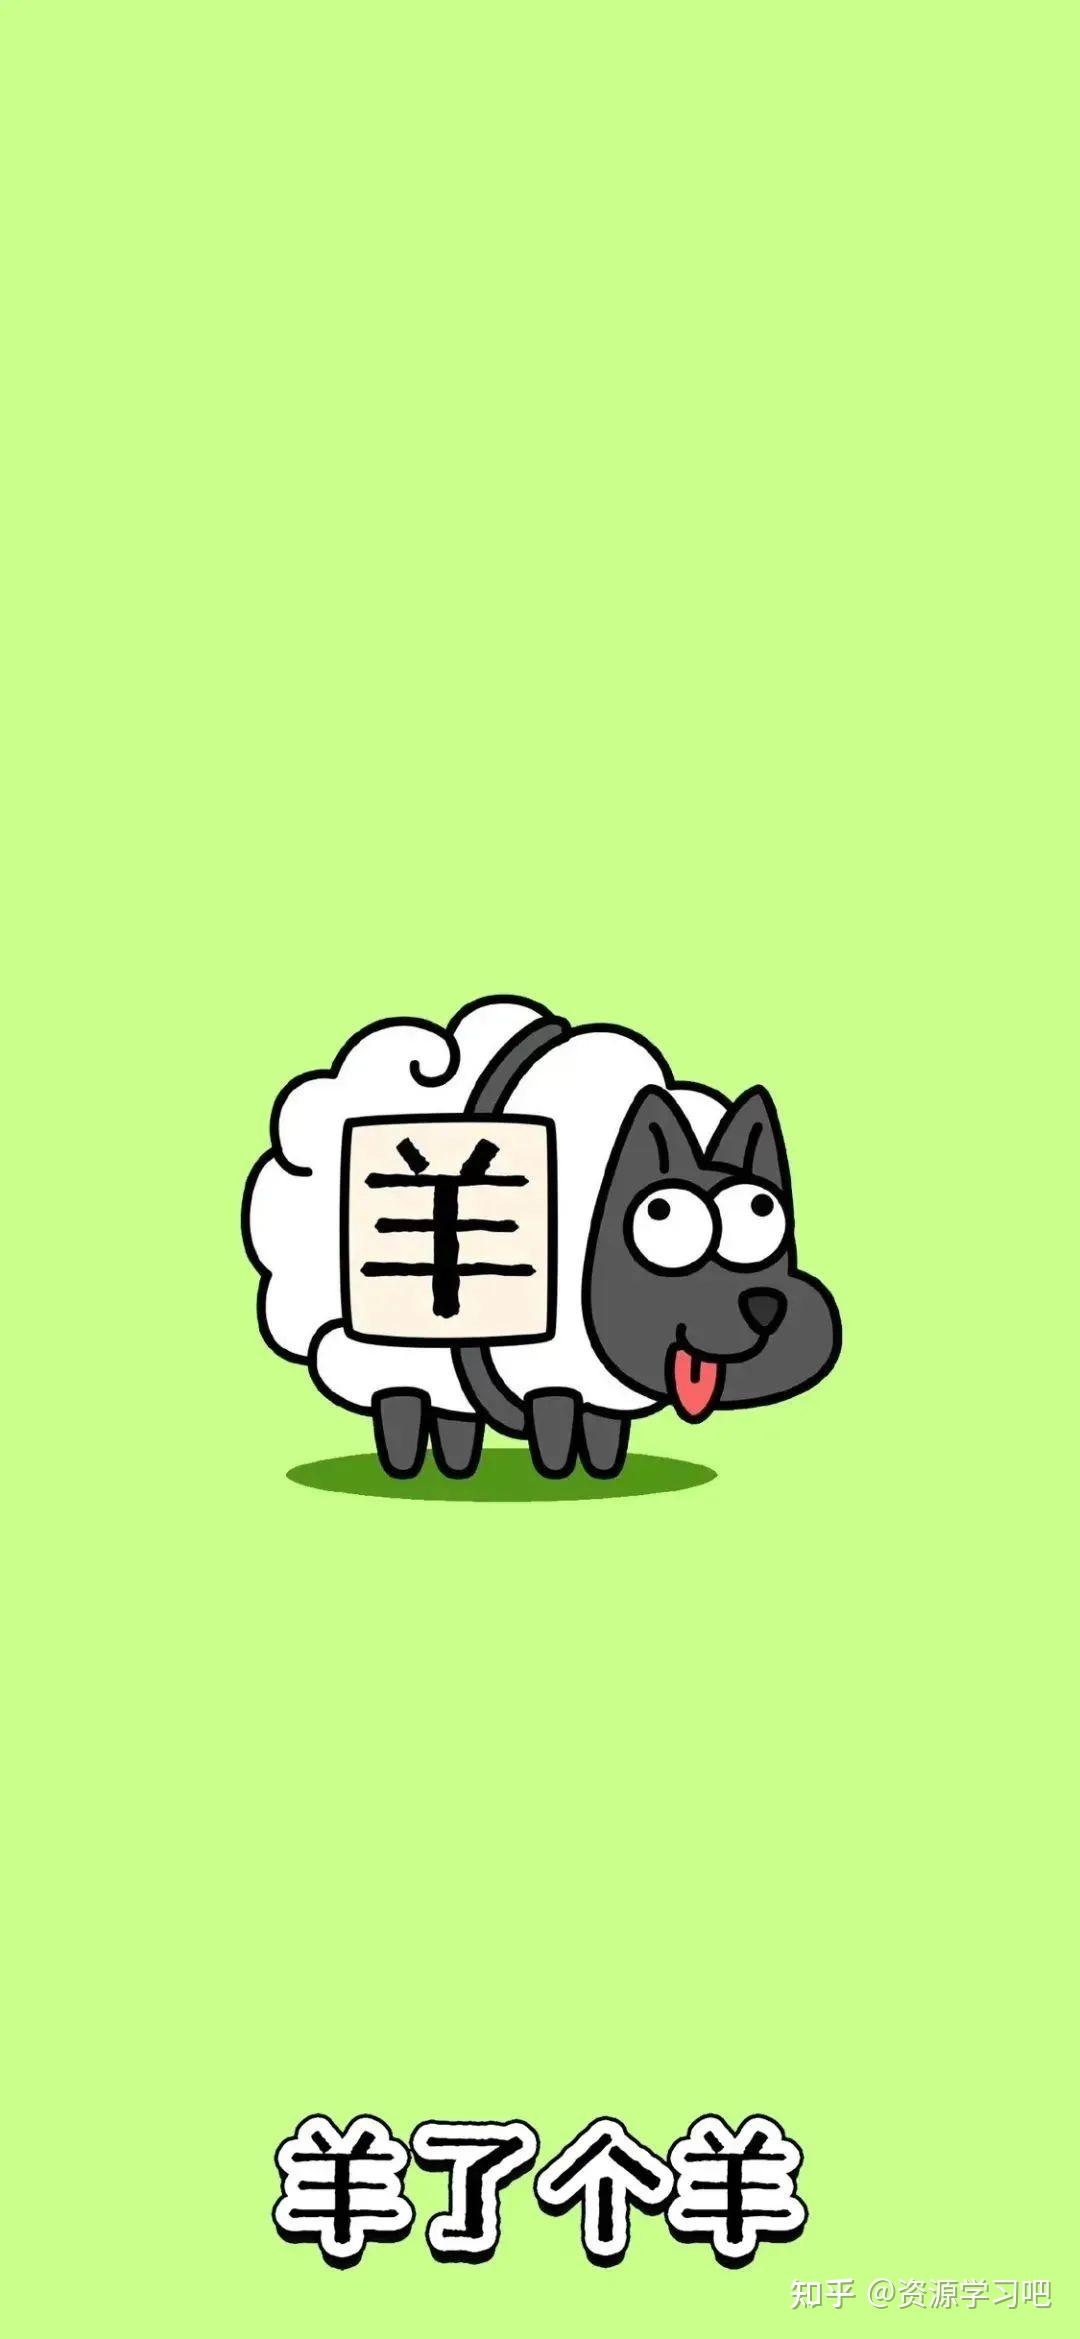 羊了个羊下载安装-羊了个羊游戏下载-羊了个羊手游下载手机版